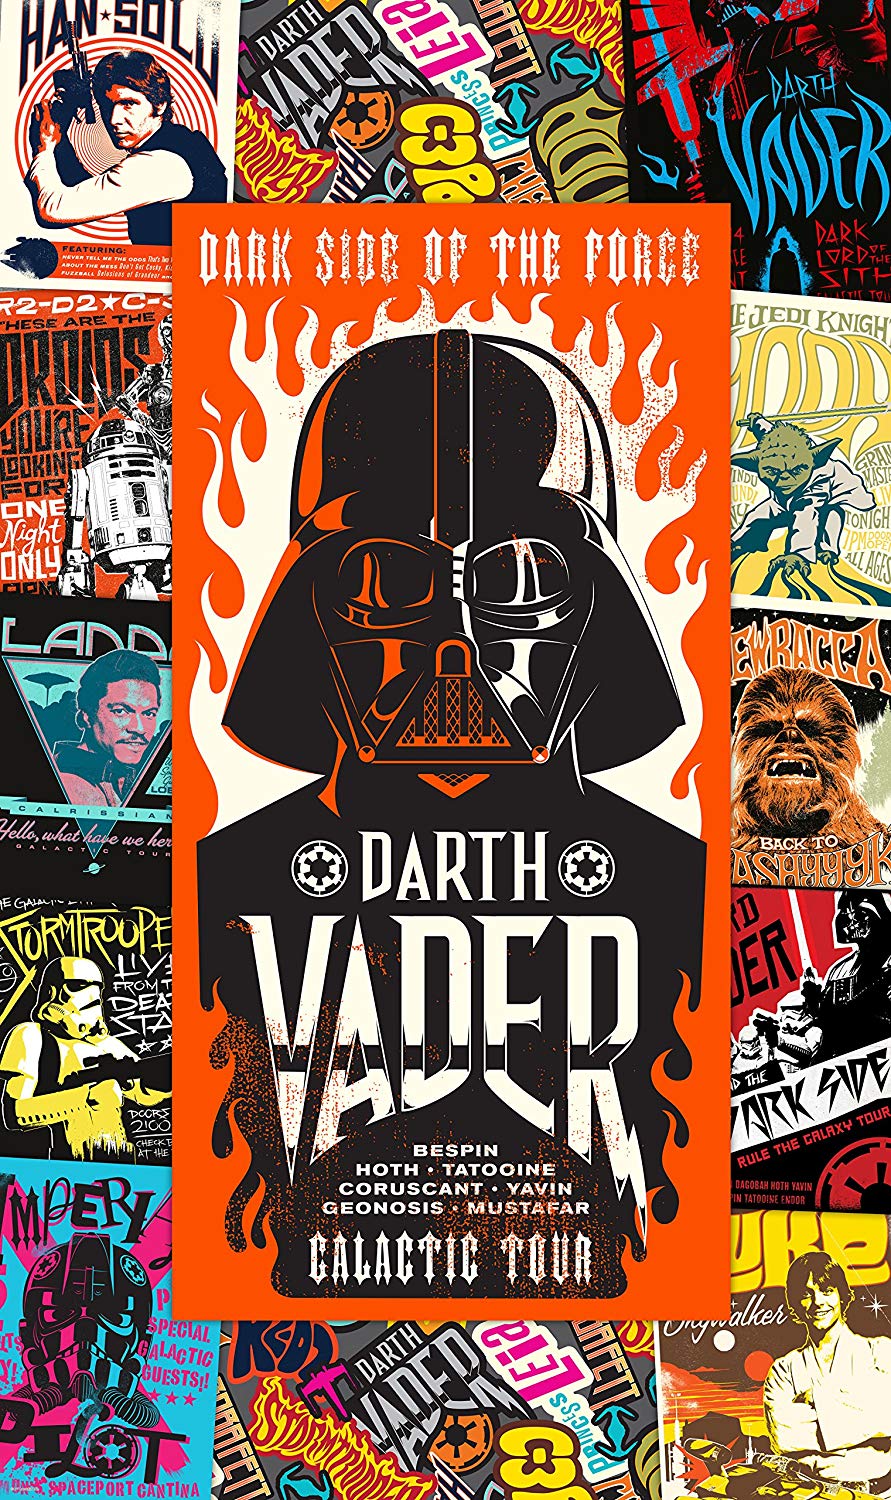 Komar Vd 020 "Rock On Poster Star Wars Wallpaper – Multi-Coloured